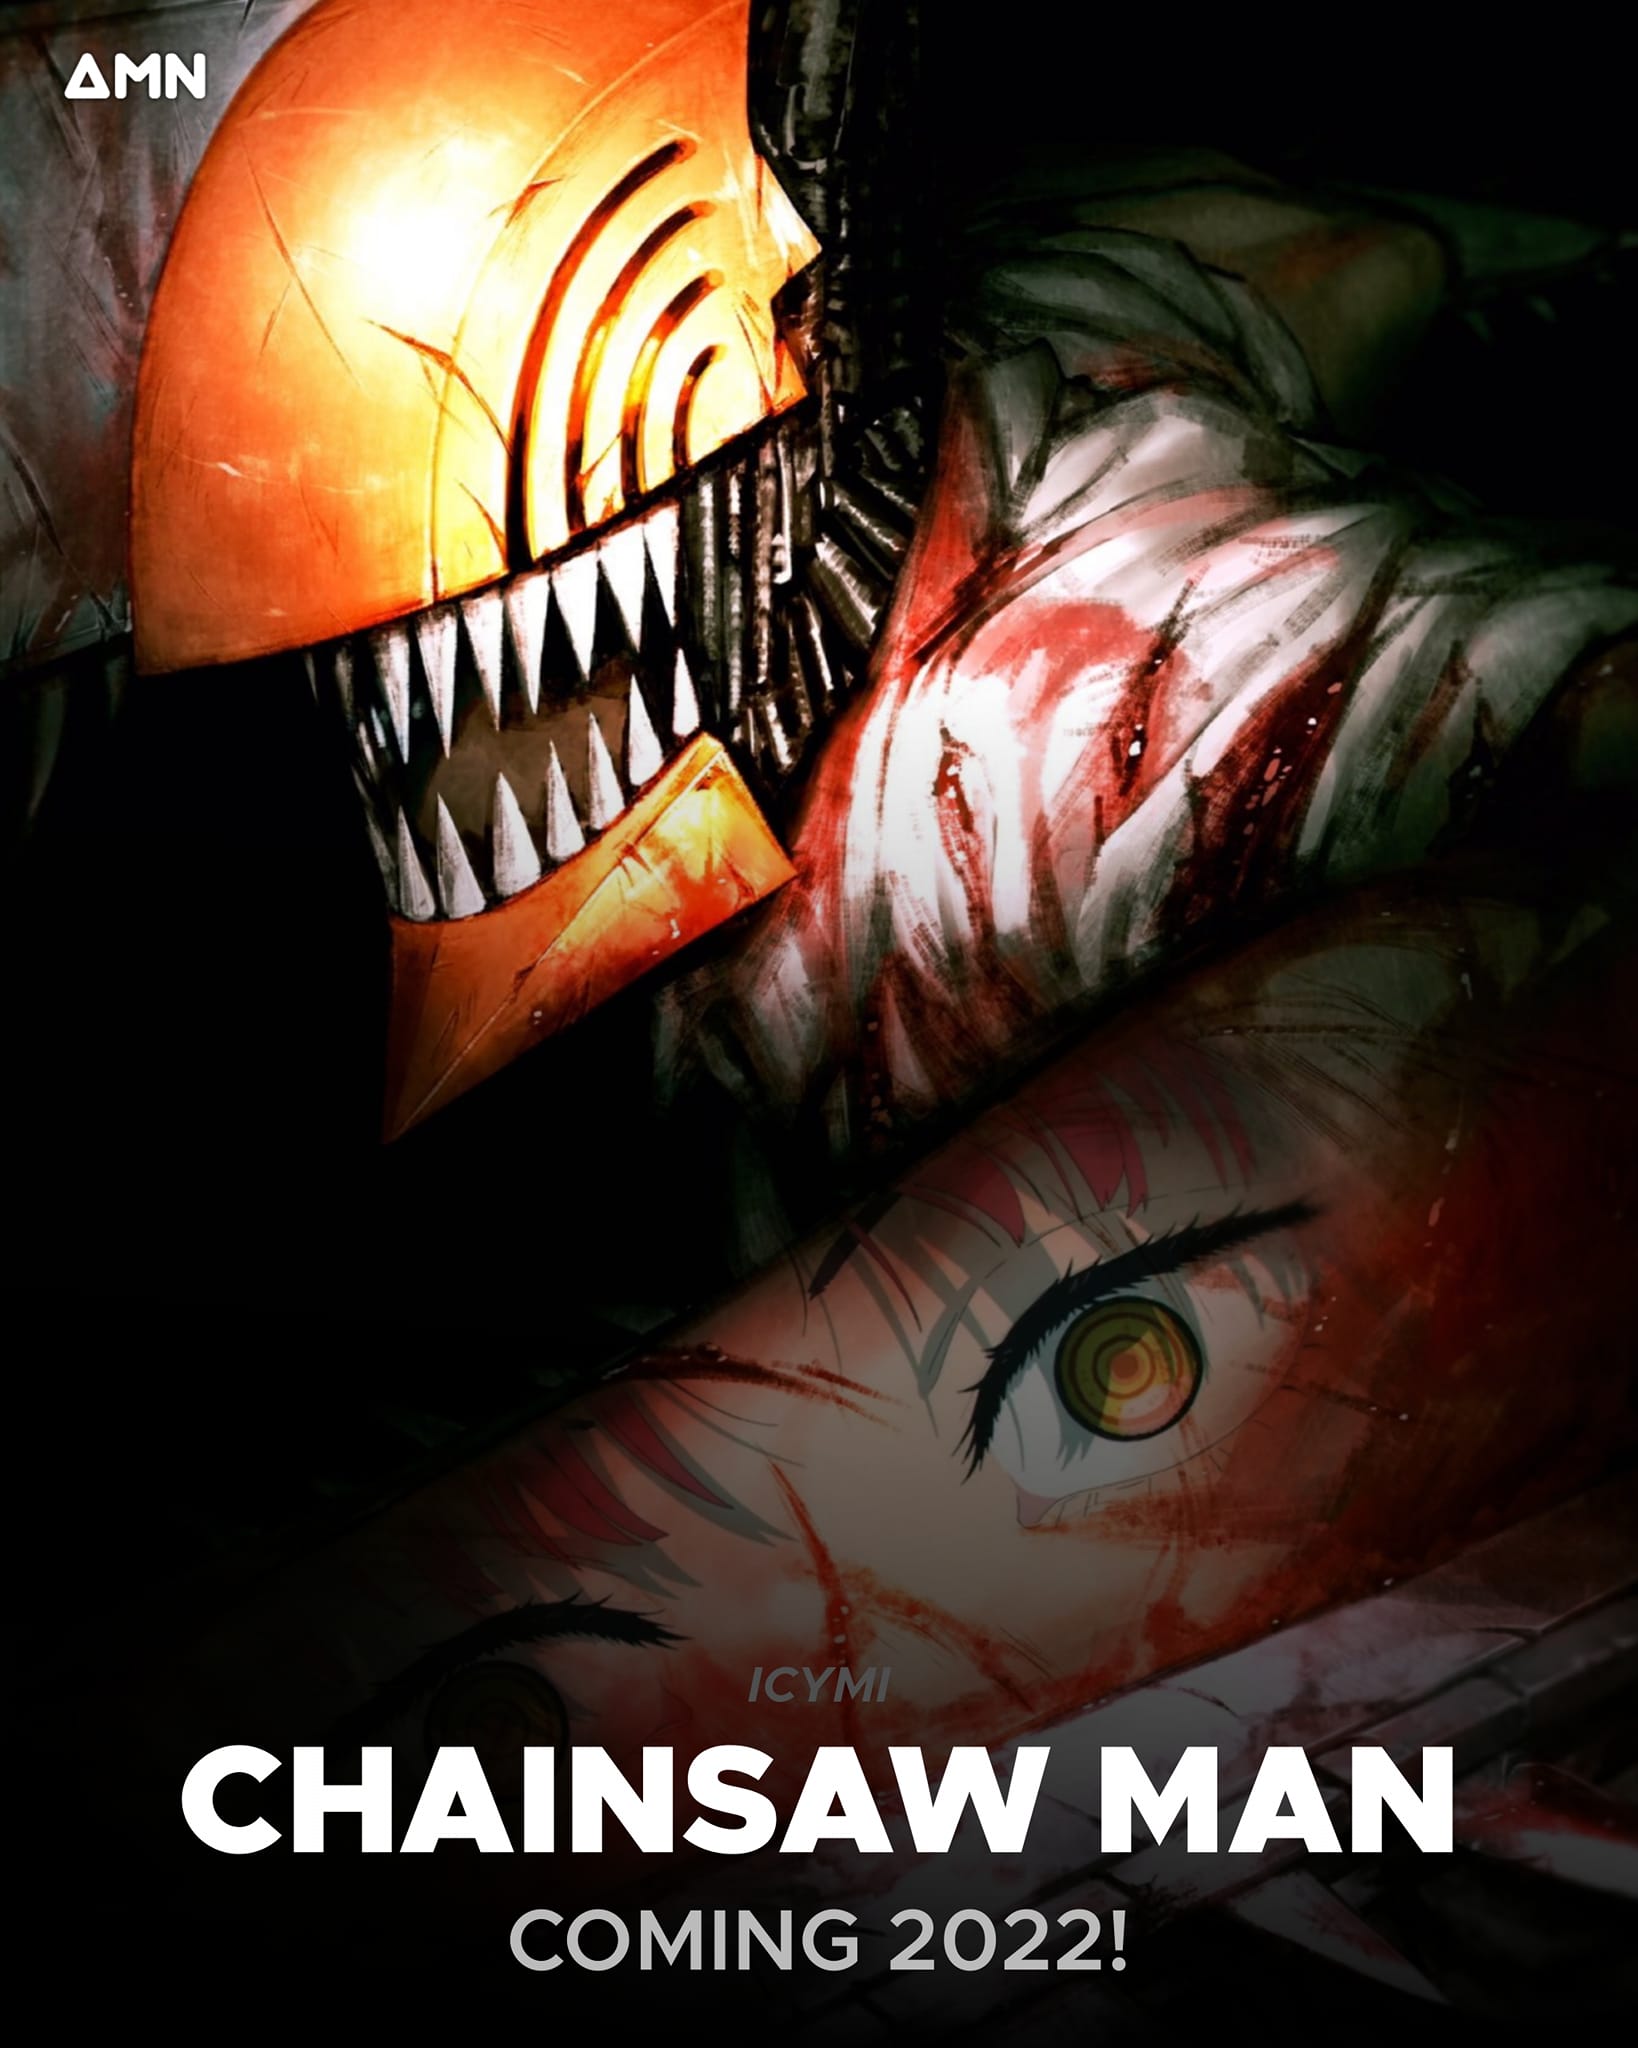 Anime Chainsaw Man: Được đánh giá là một trong những anime được mong chờ nhất của năm, Chainsaw Man đem đến một thế giới đầy bạo lực, kỳ lạ và đậm chất anime. Hãy xem hình ảnh này để được trải nghiệm một sự phiêu lưu tuyệt vời.